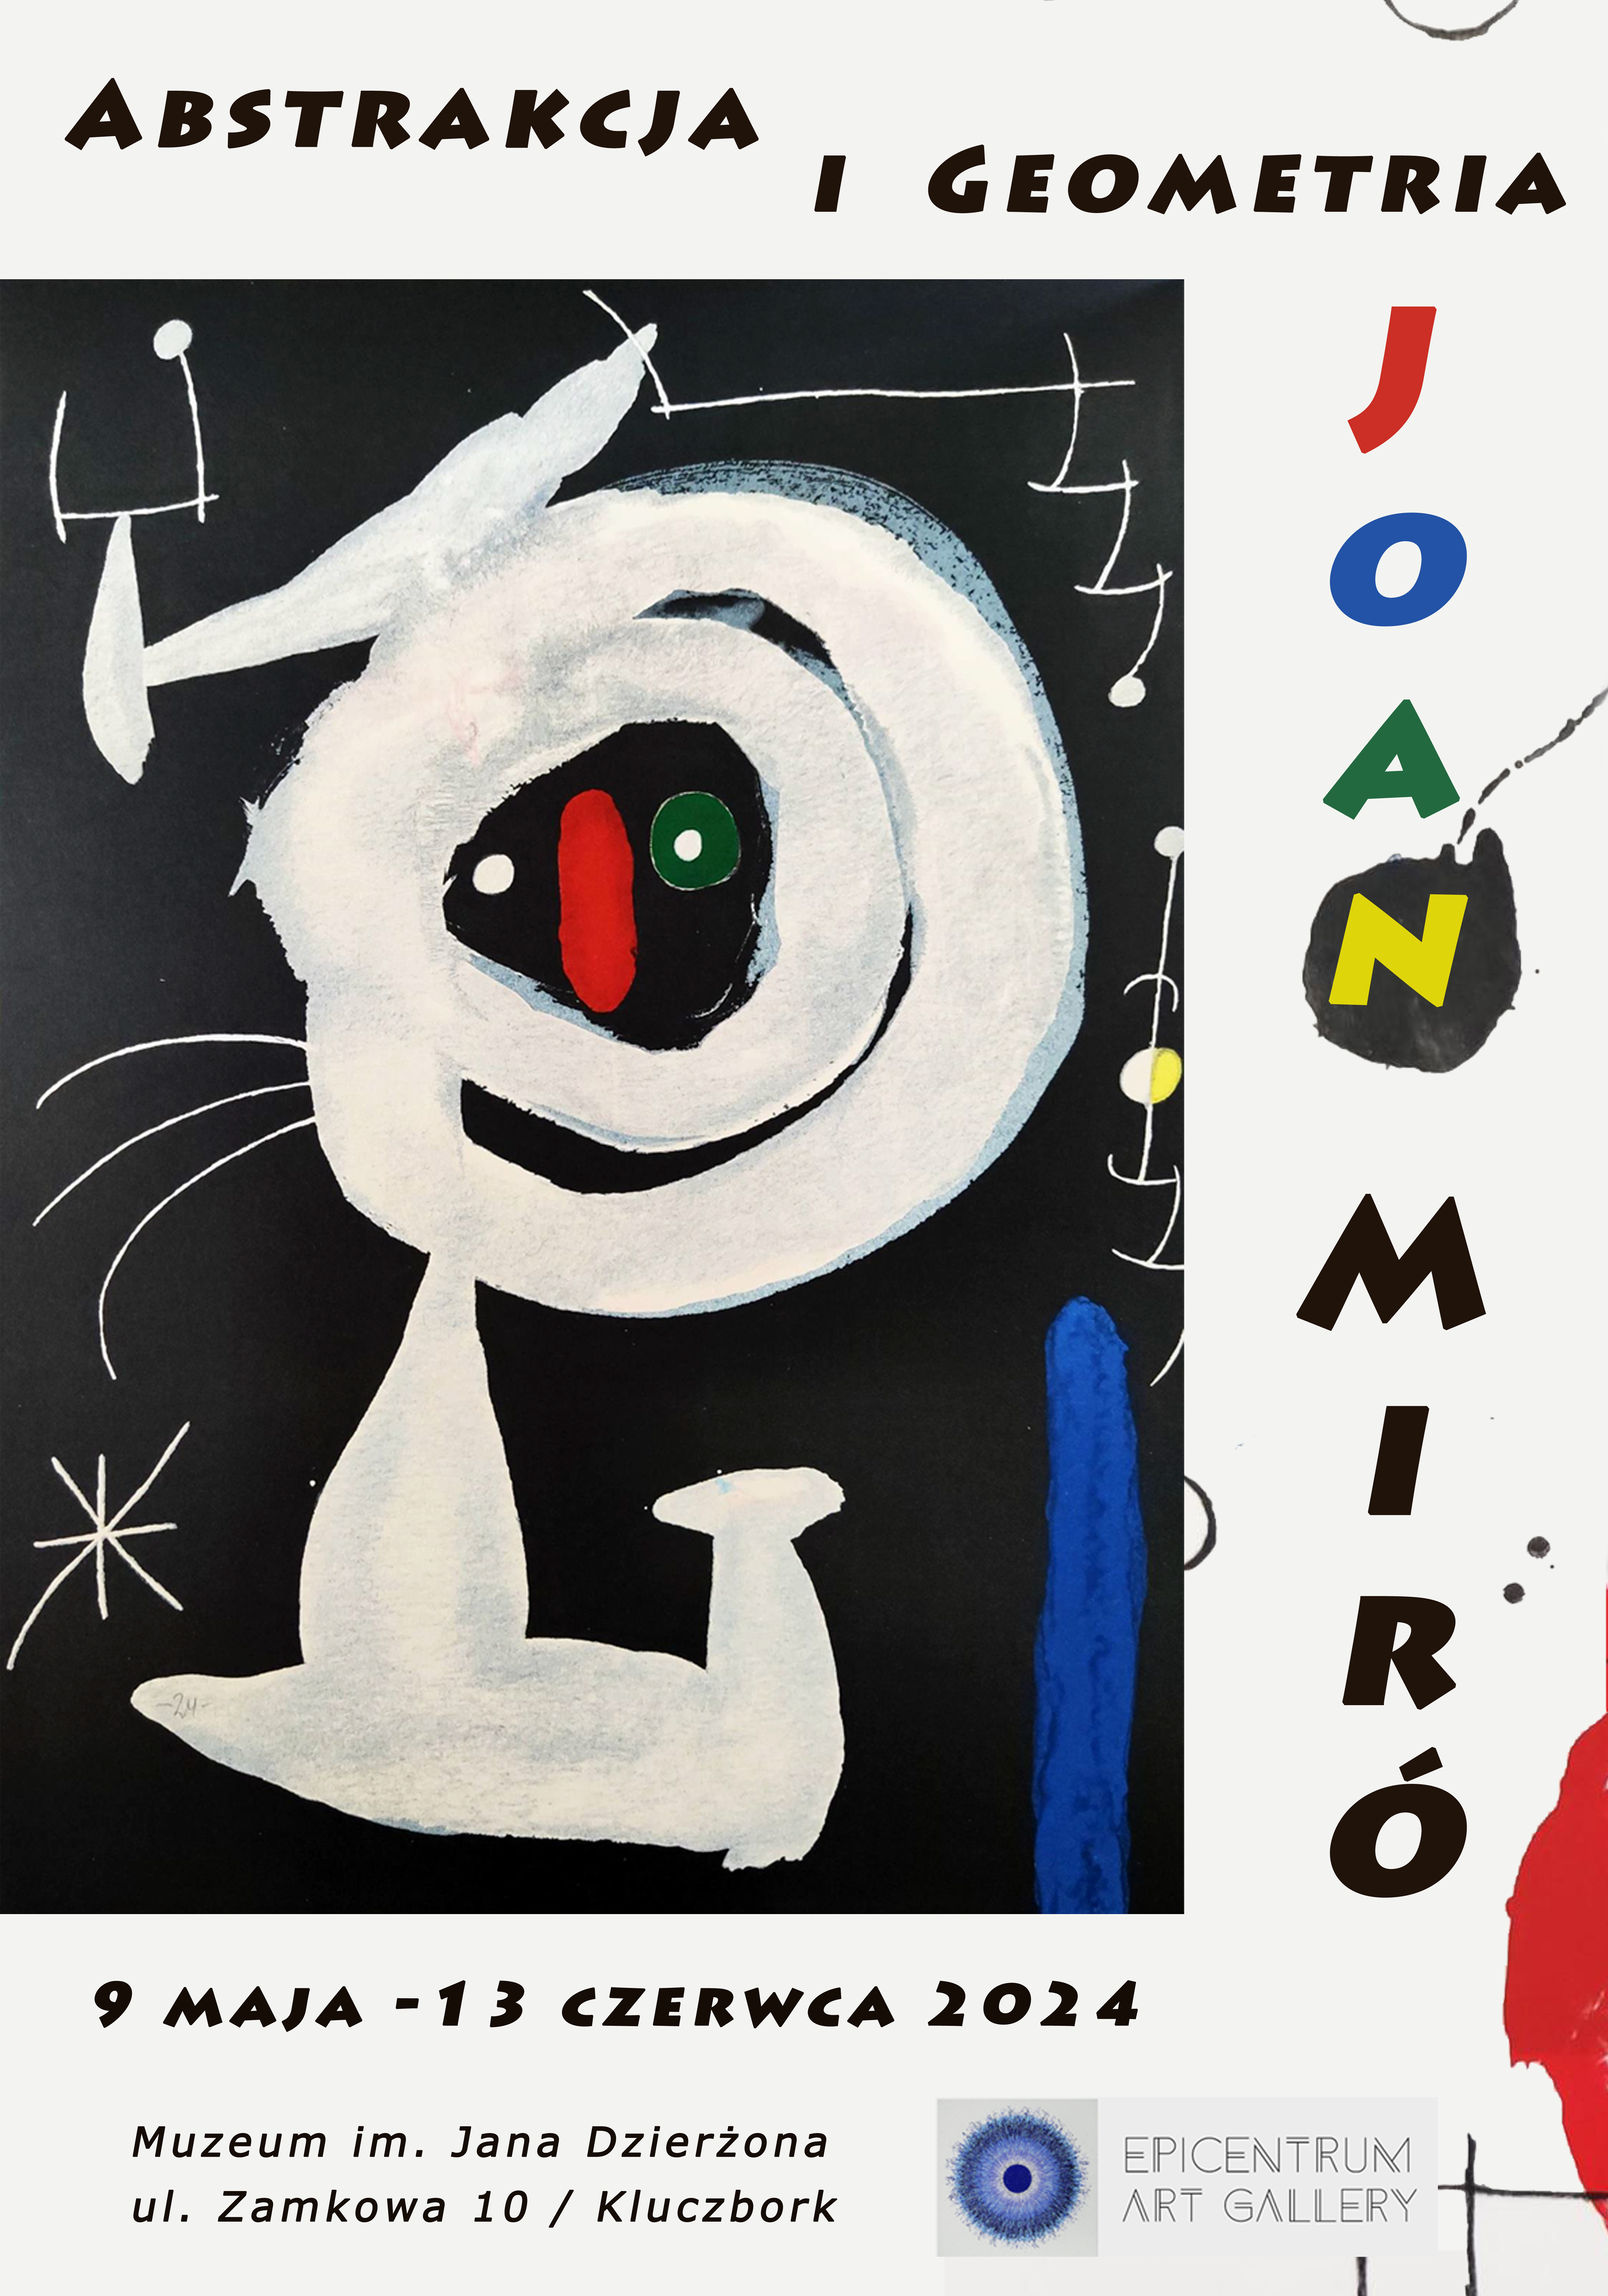 ABSTRAKCJA I GEOMETRIA - na plakacie litografia artysty "Kompozycja", na czarnym tle kręgi, linie, kształty geometryczne w kolorach: białym, niebieskim, zielonym, czerwonym, żółtym.